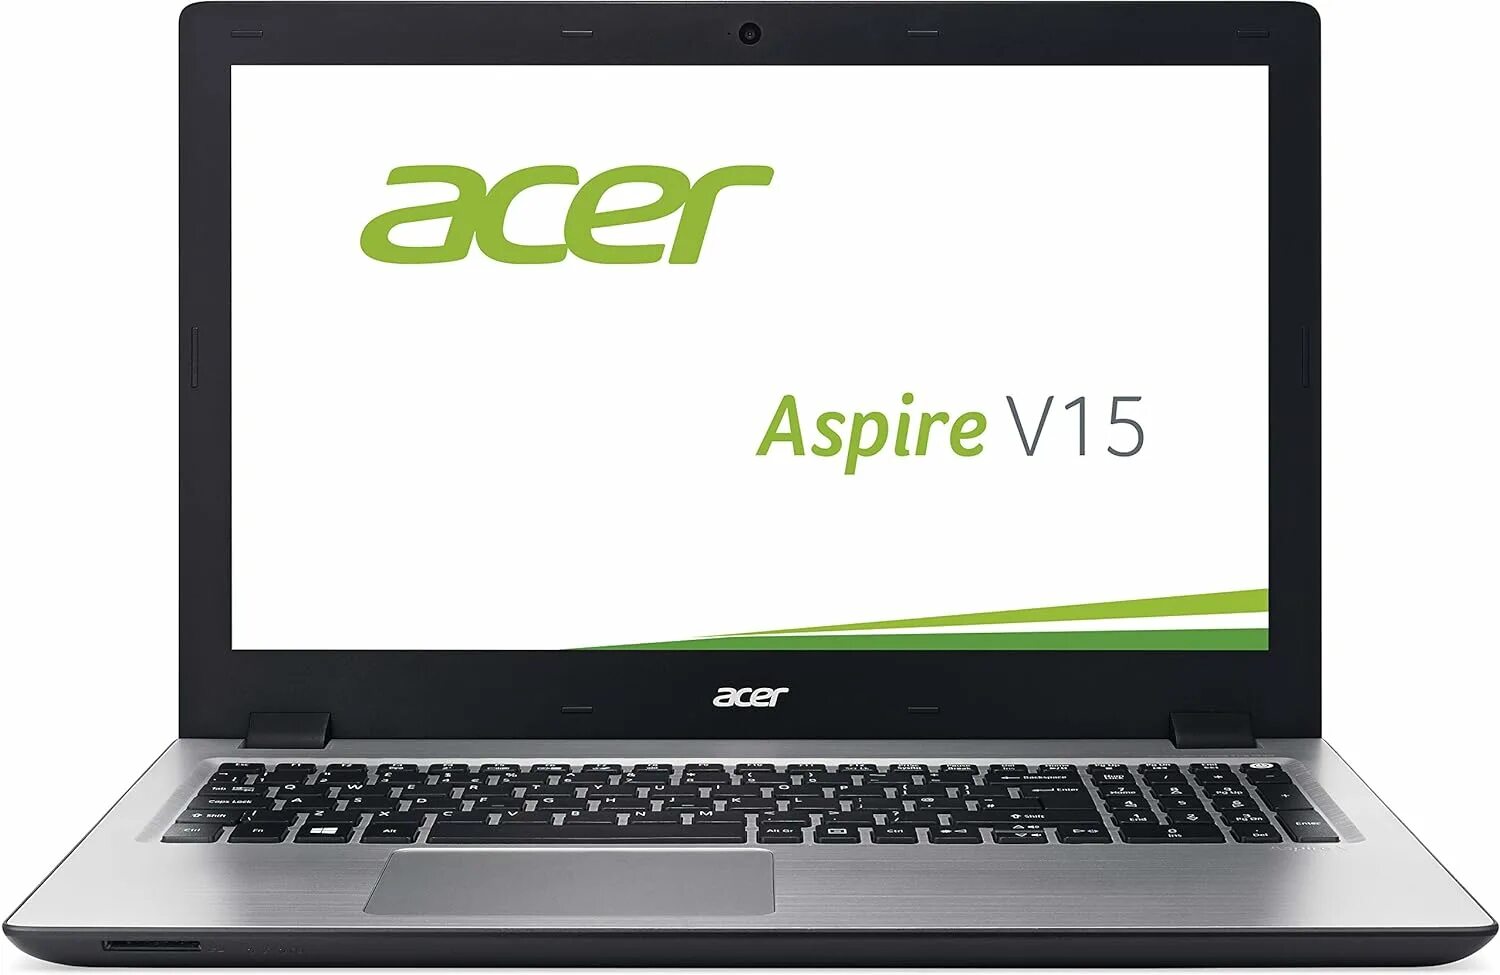 Acer Aspire v3-331. Acer Aspire v3-771g. Aser Spire v5 Silver. Ноутбук Acer Aspire e5-575g-35ra. Асер aspire драйвера